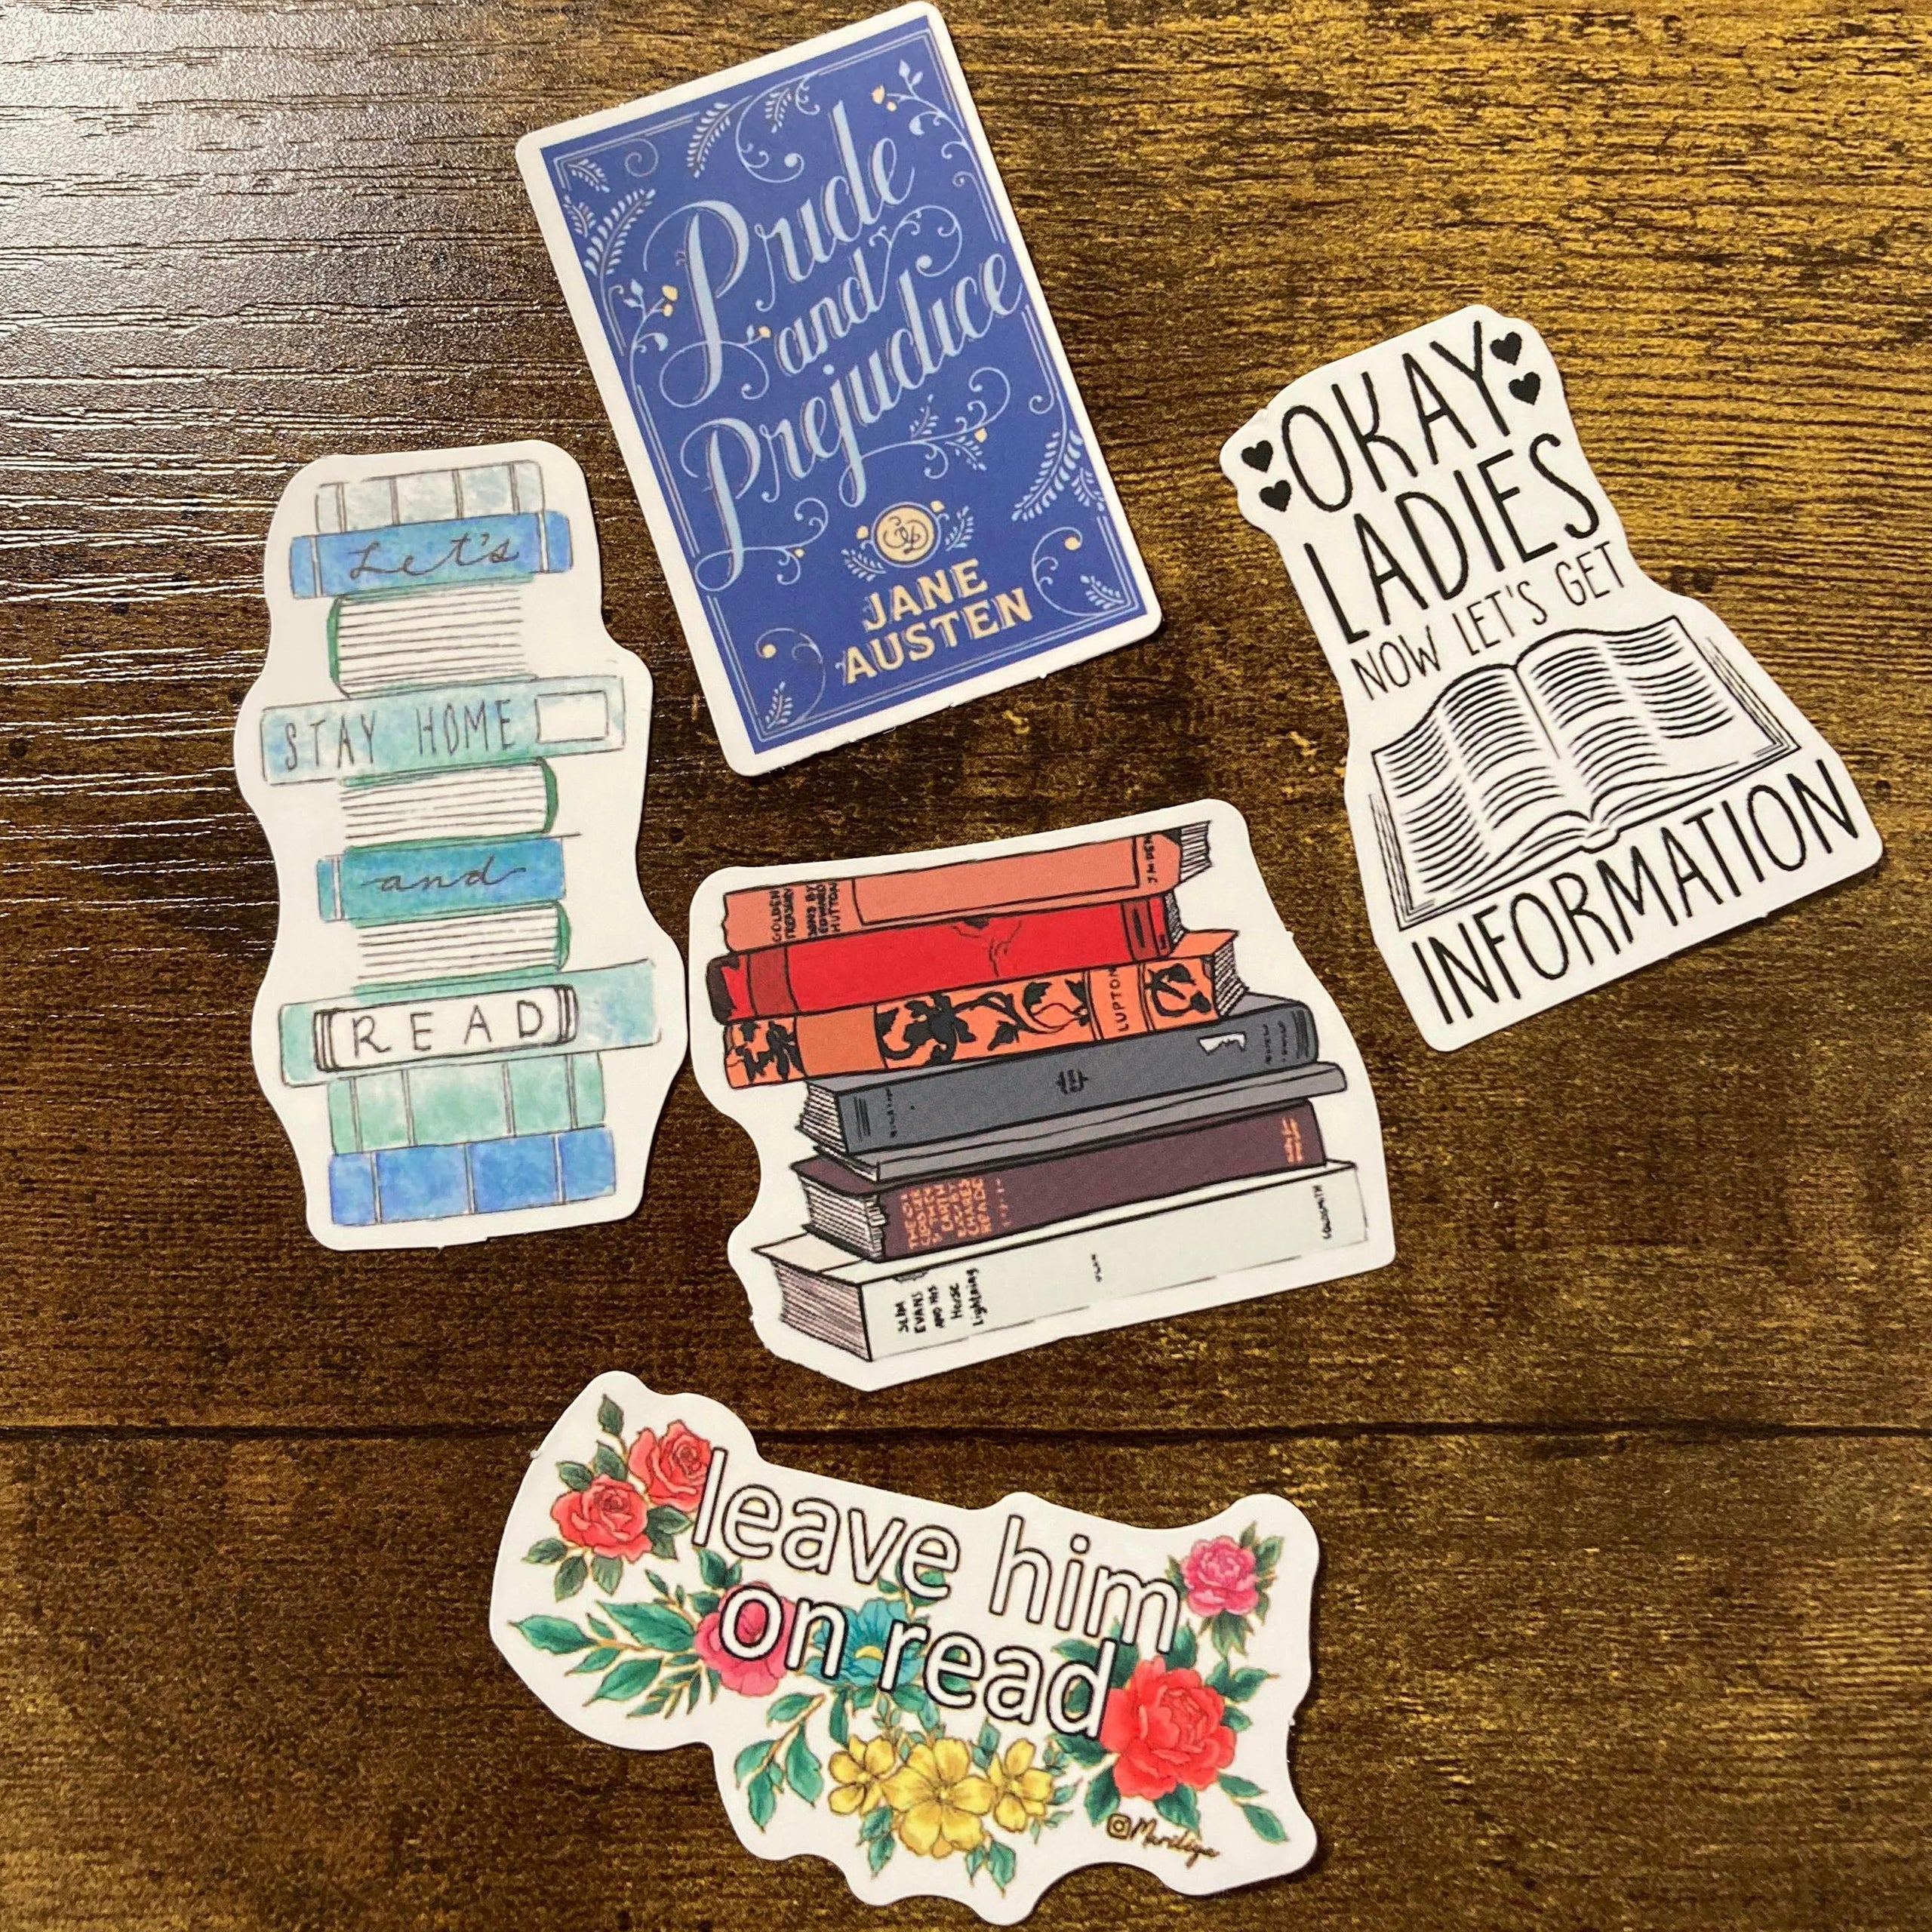 Stickers Book Lover - Autocollants sur le thème des livres et de